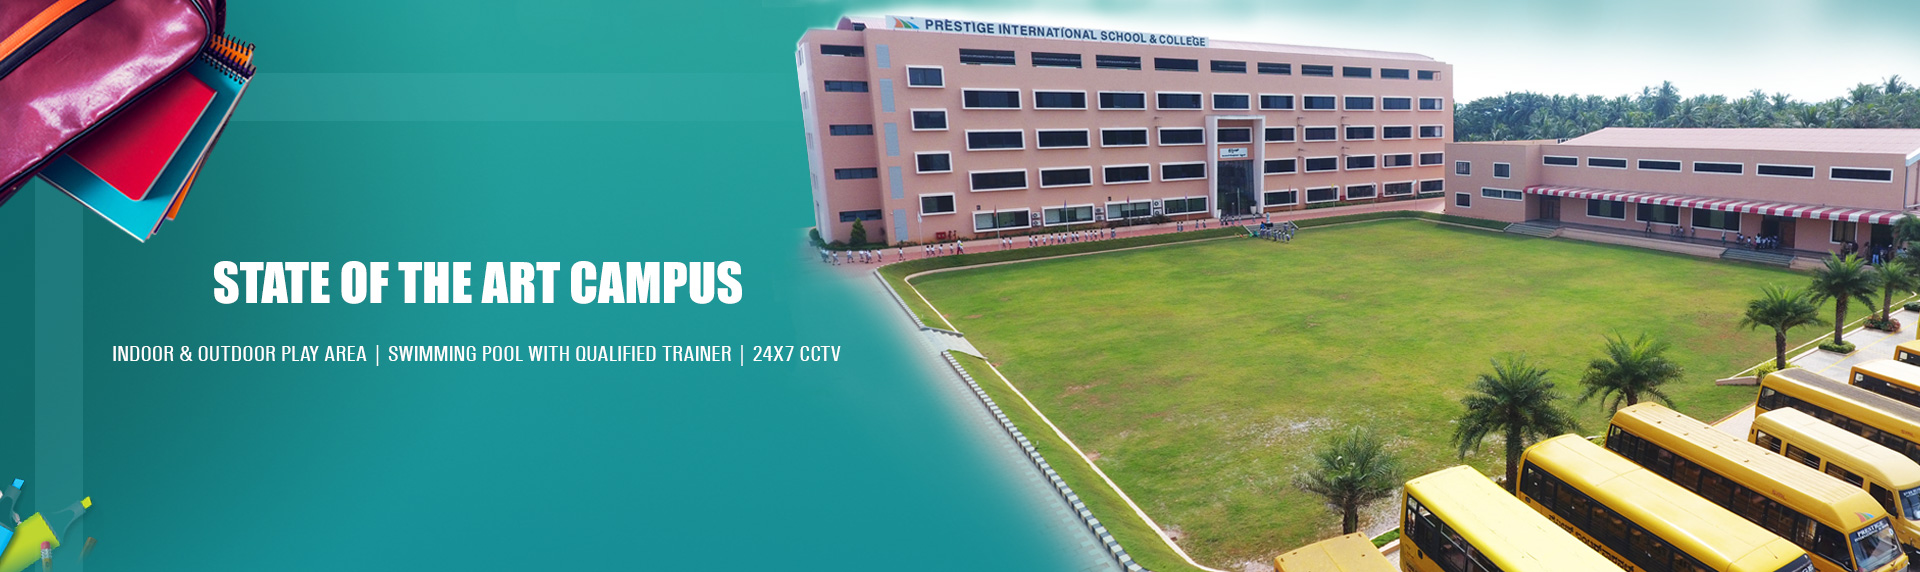 PRESTIGE PU College Mangalore